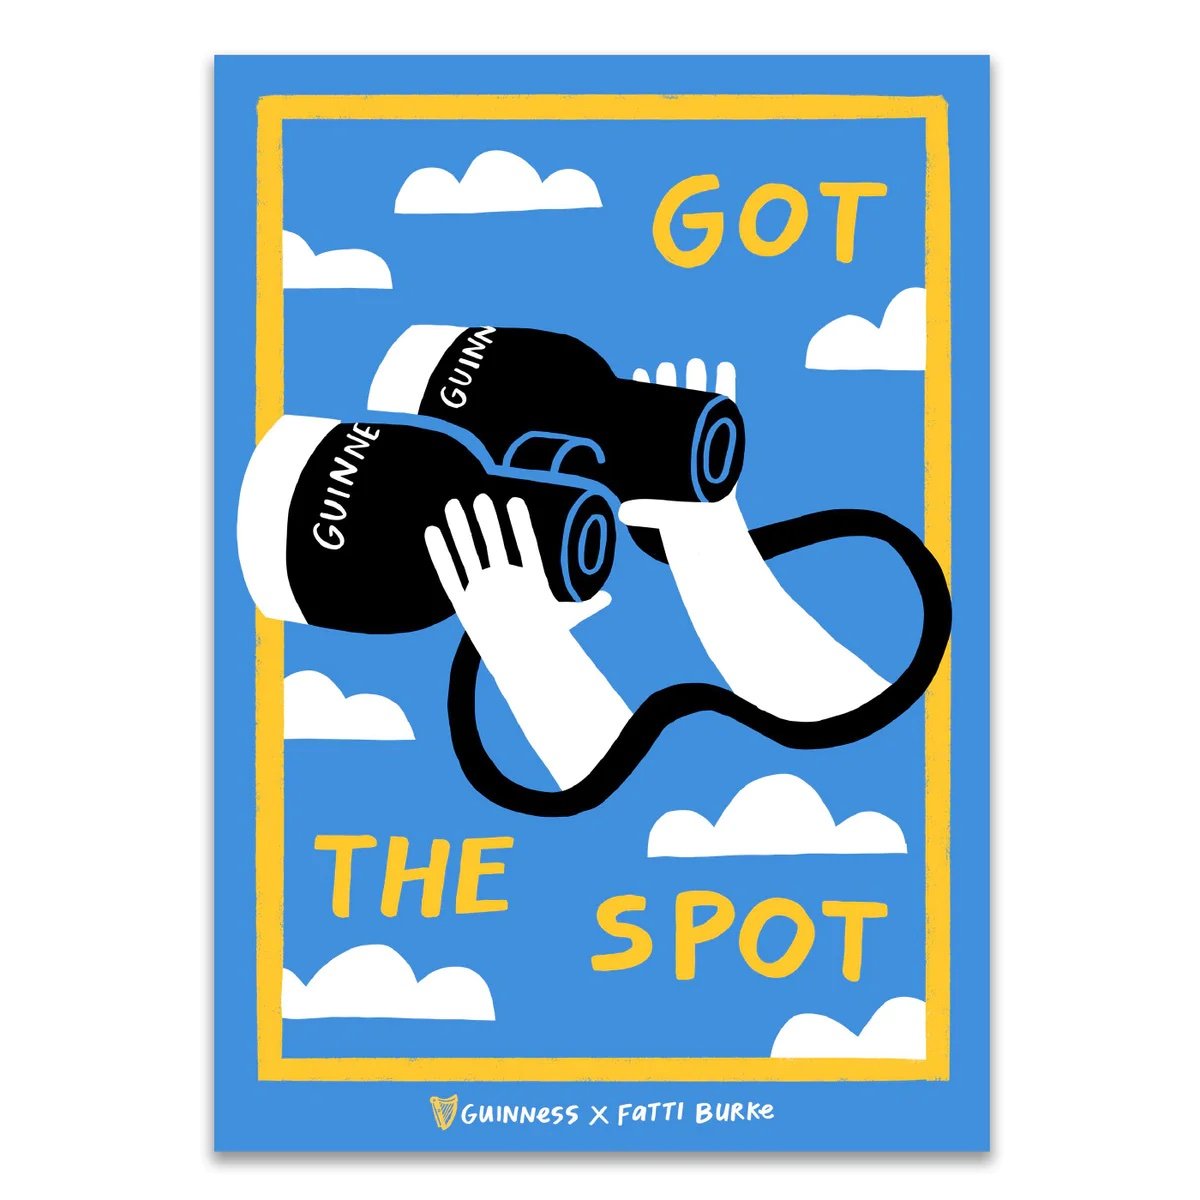 Got-the-spot_1200x.jpg